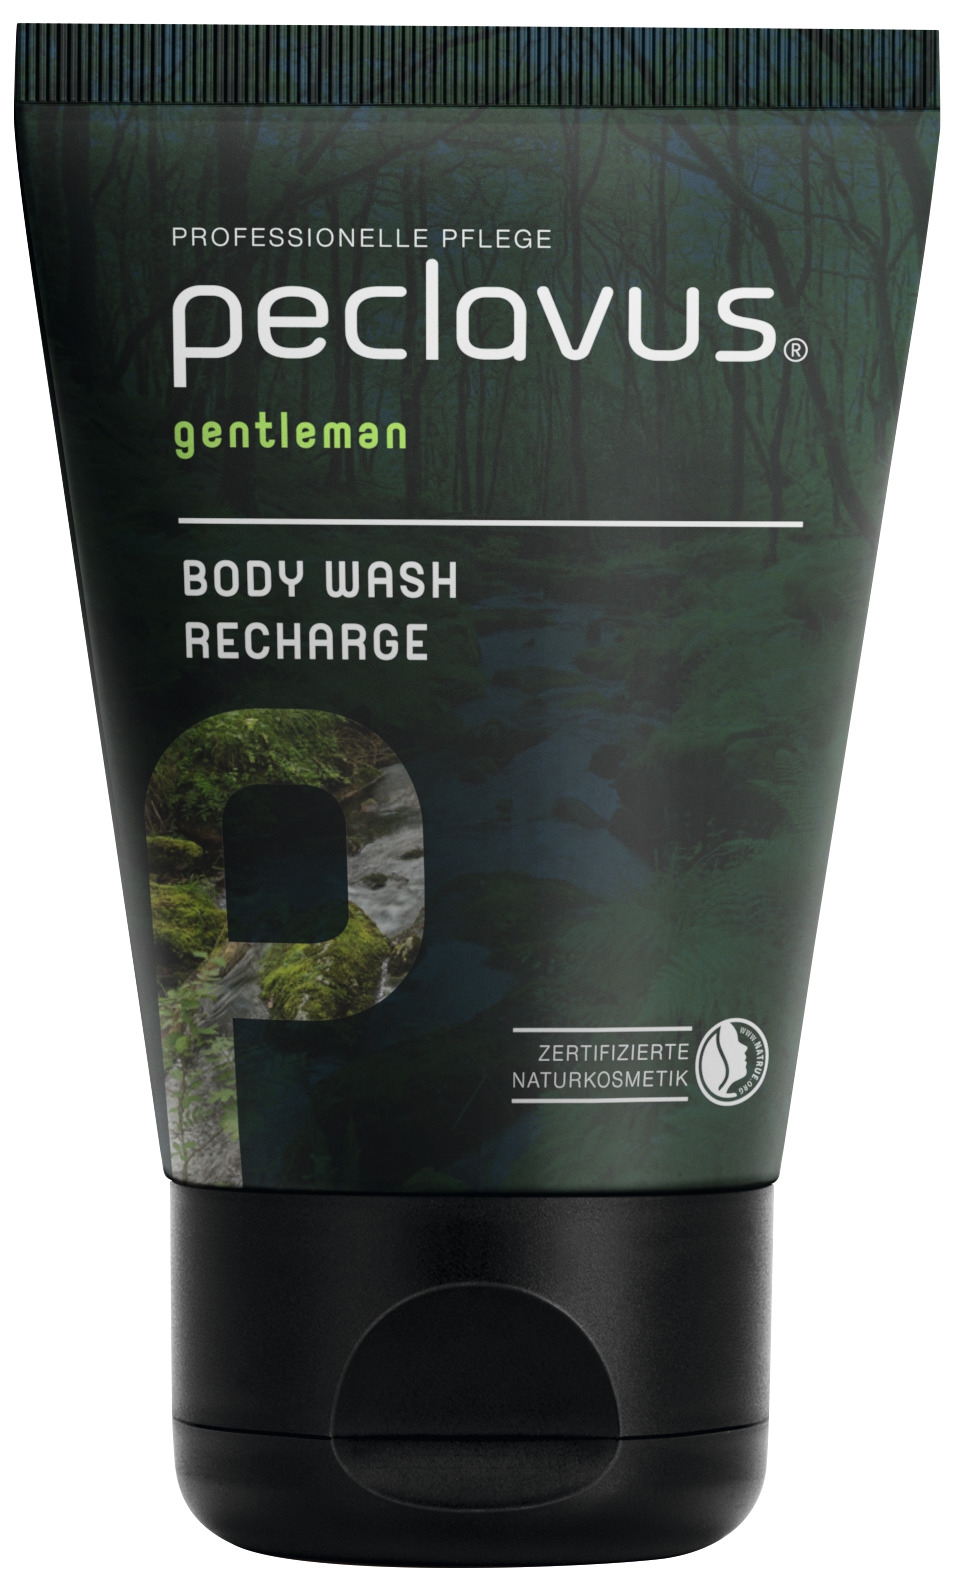 PECLAVUS gentleman | Body Wash Recharge 30 ml